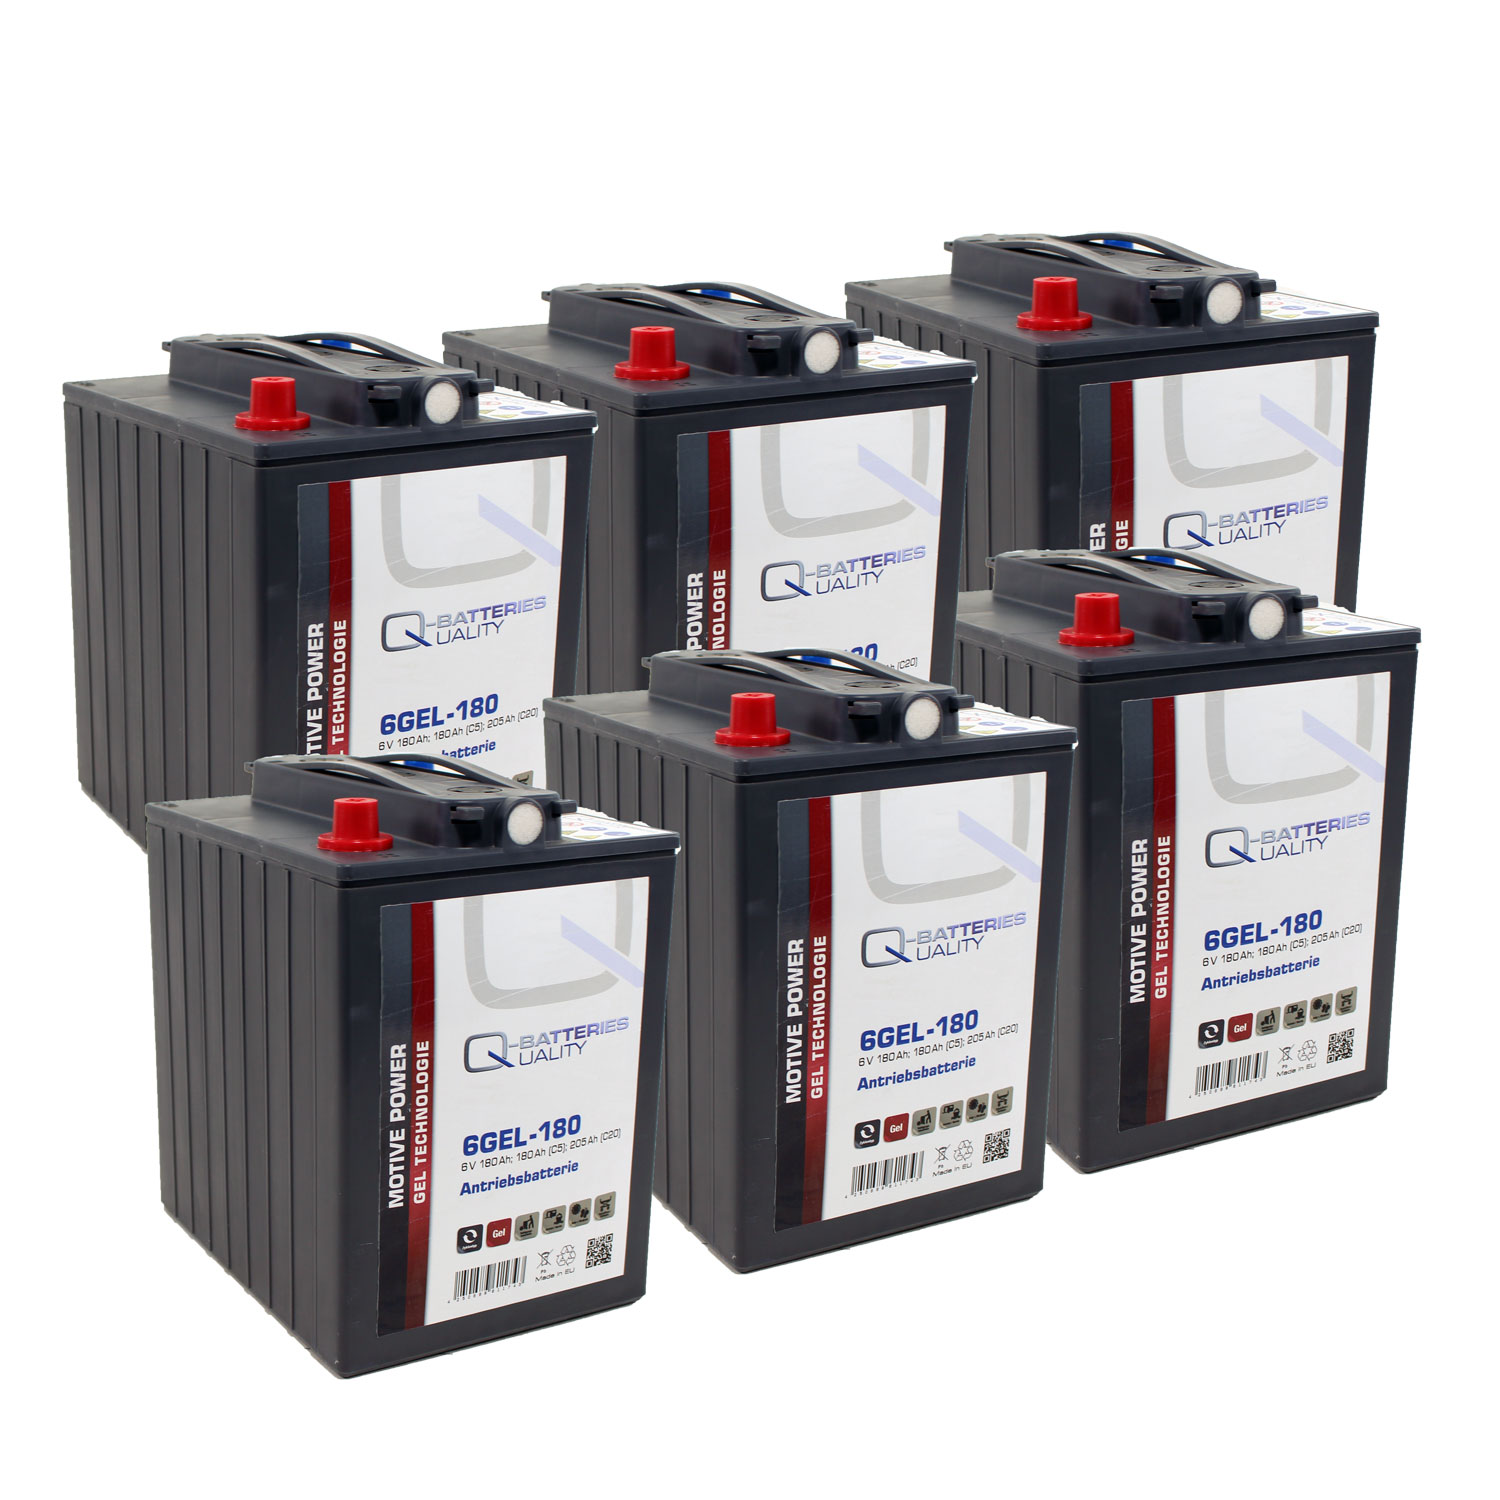 Ersatzakku für Kärcher Reinigungsmaschinen Gel Batterie 36V 180Ah (6 Stück)